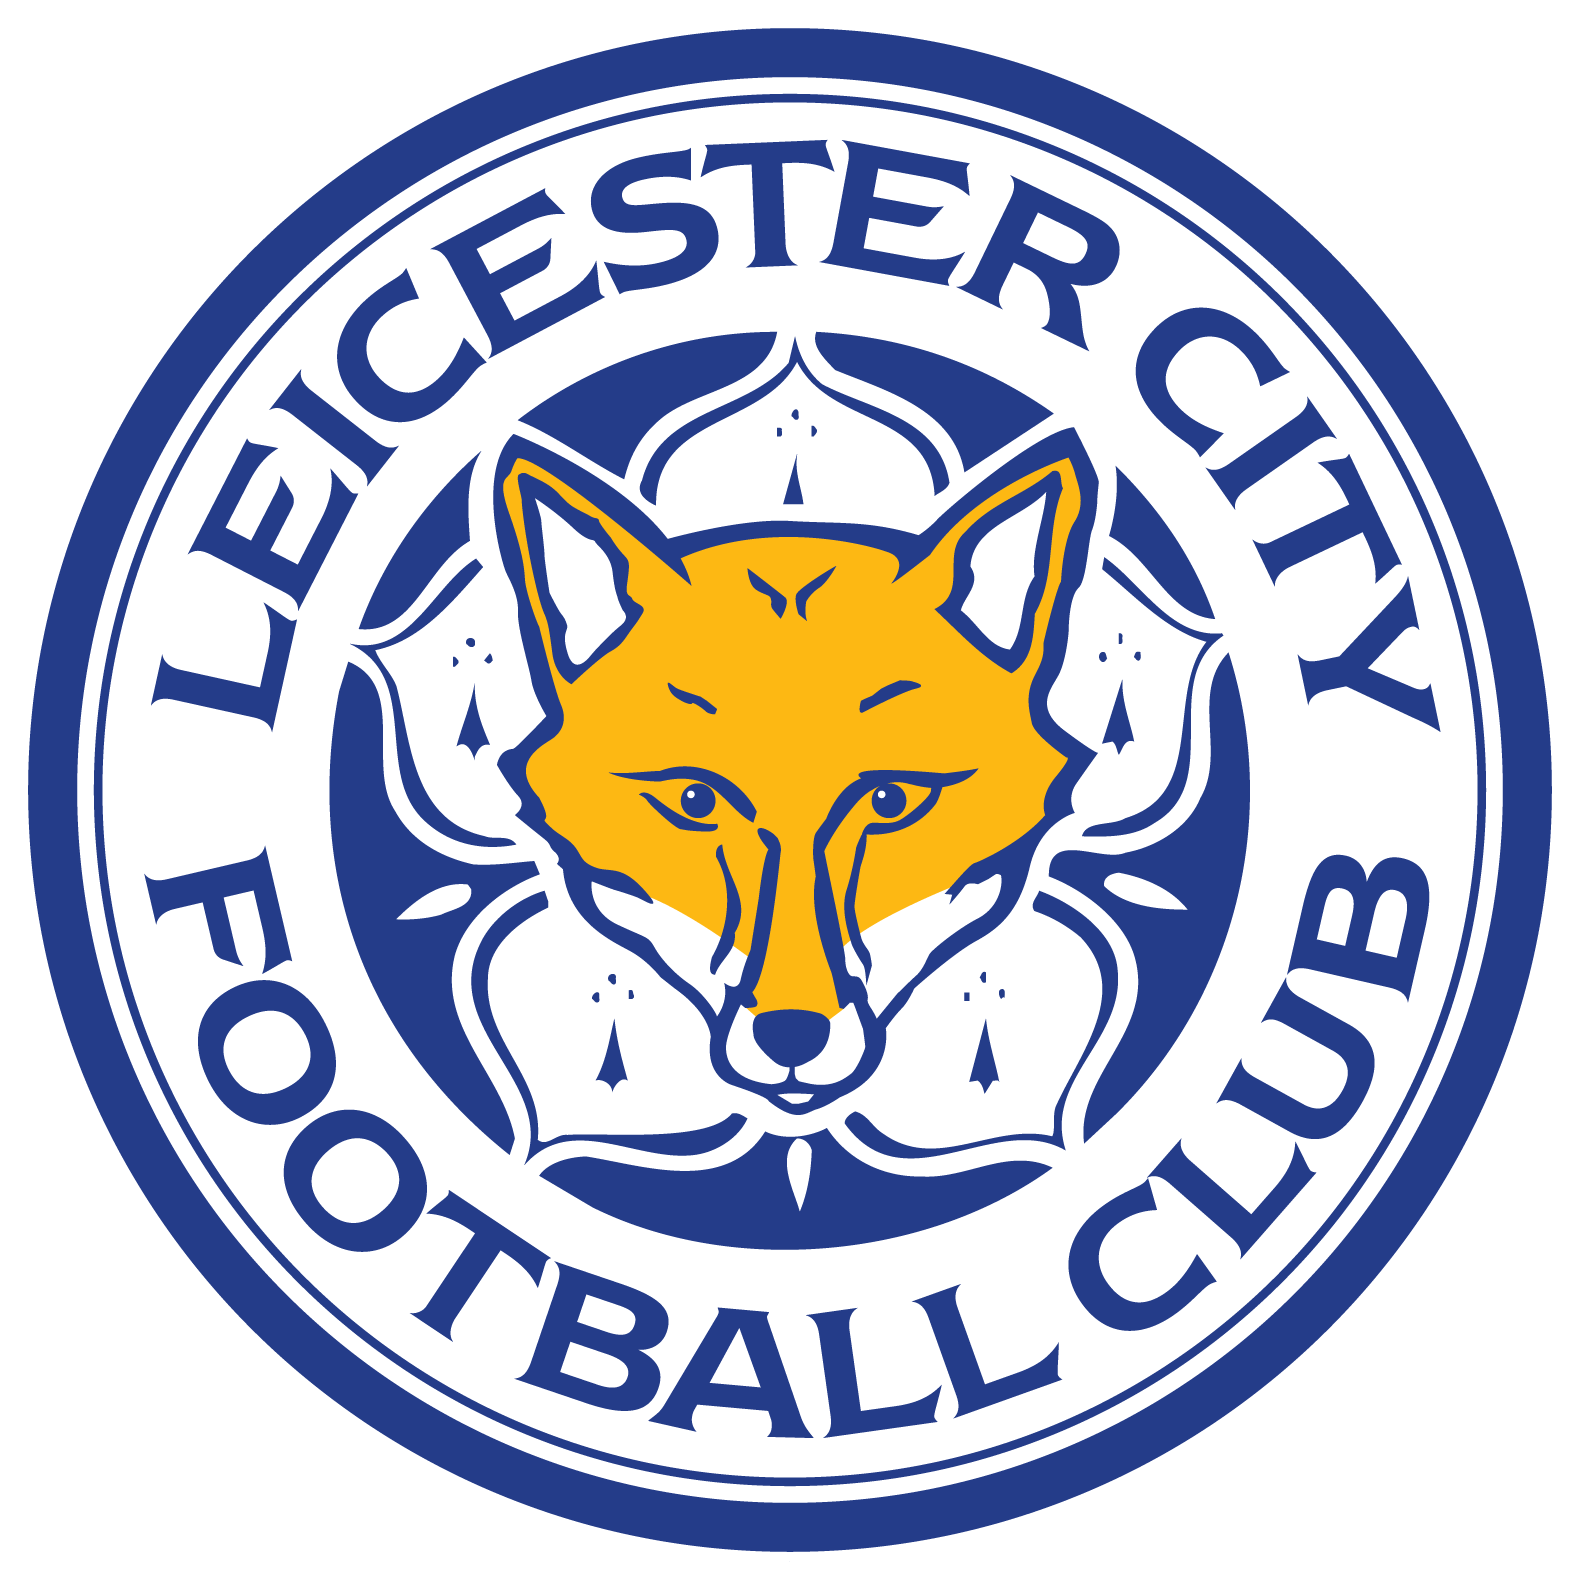 Leicester City Football Club logo